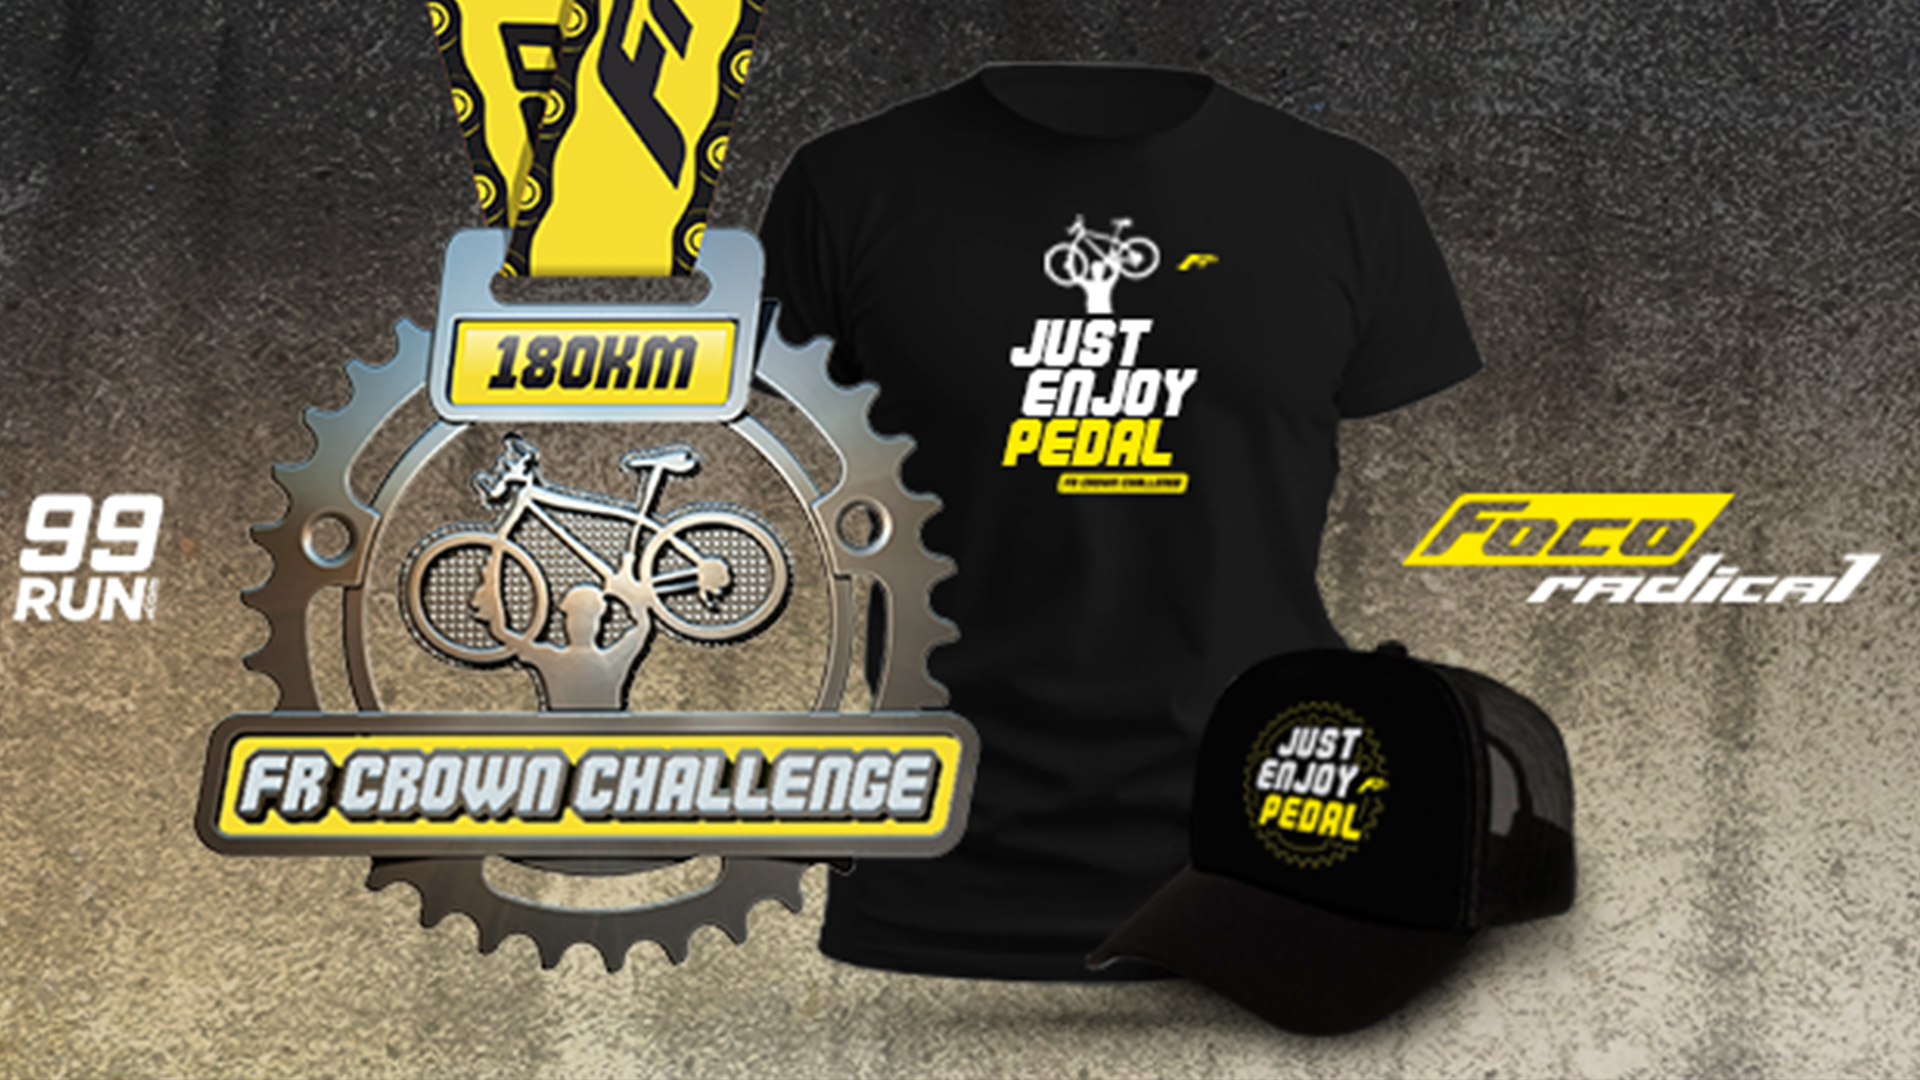 FR-Crown-Challenge-desafio-virtual-para-ciclistas-blog-foco-radical